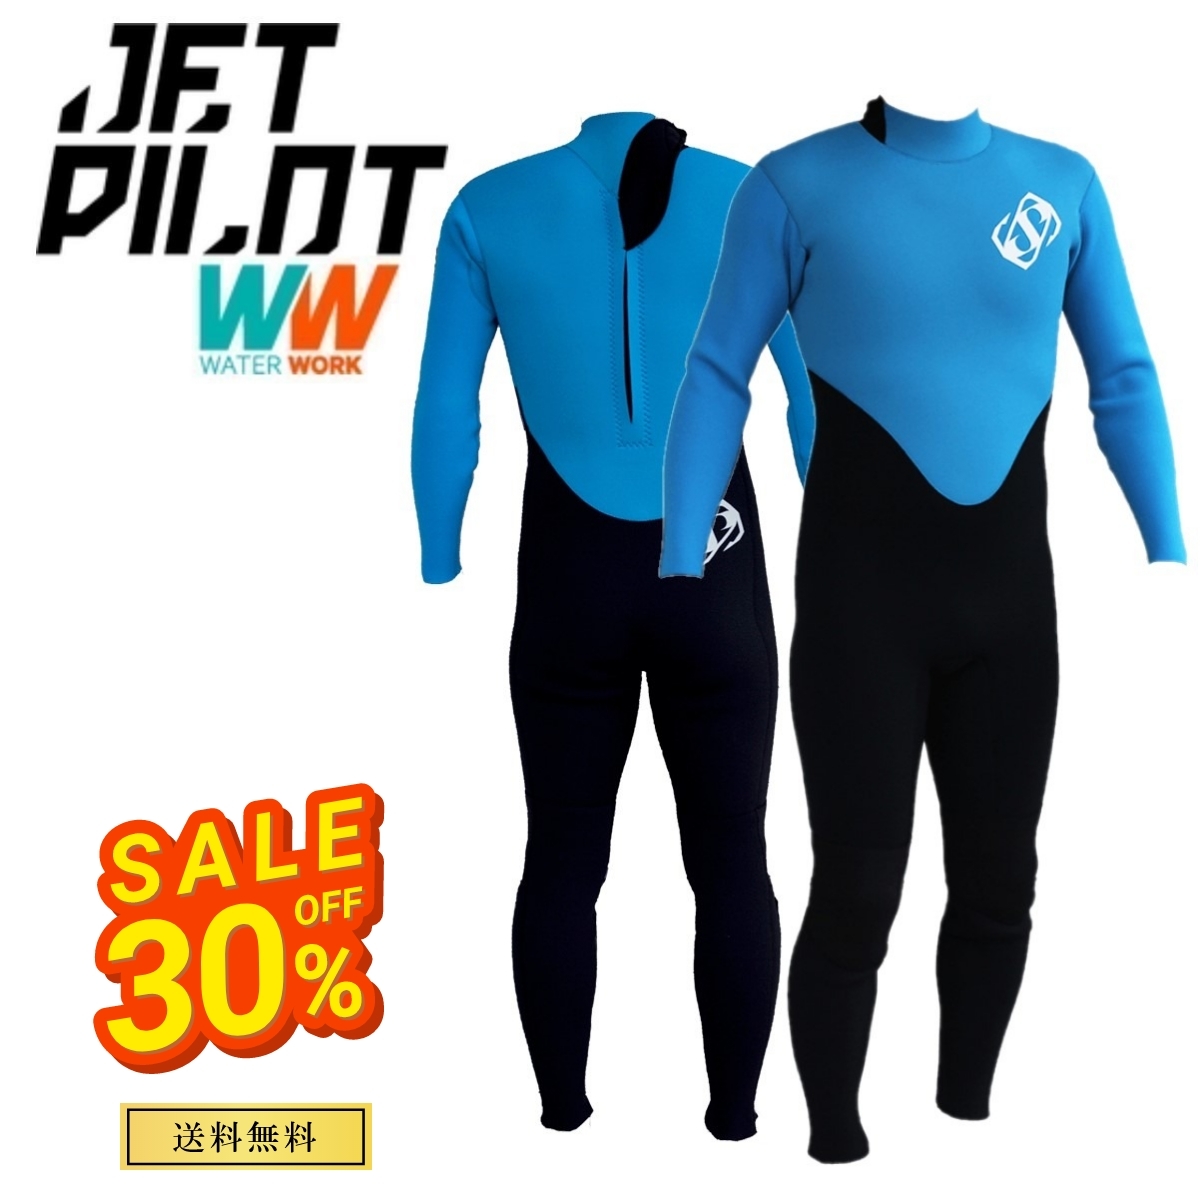 ジェットパイロット JETPILOT ウェットスーツ セール 30%オフ 送料無料 HAZAieco 3×2mm ジャージ フルスーツ JJP21300 ブルー LL